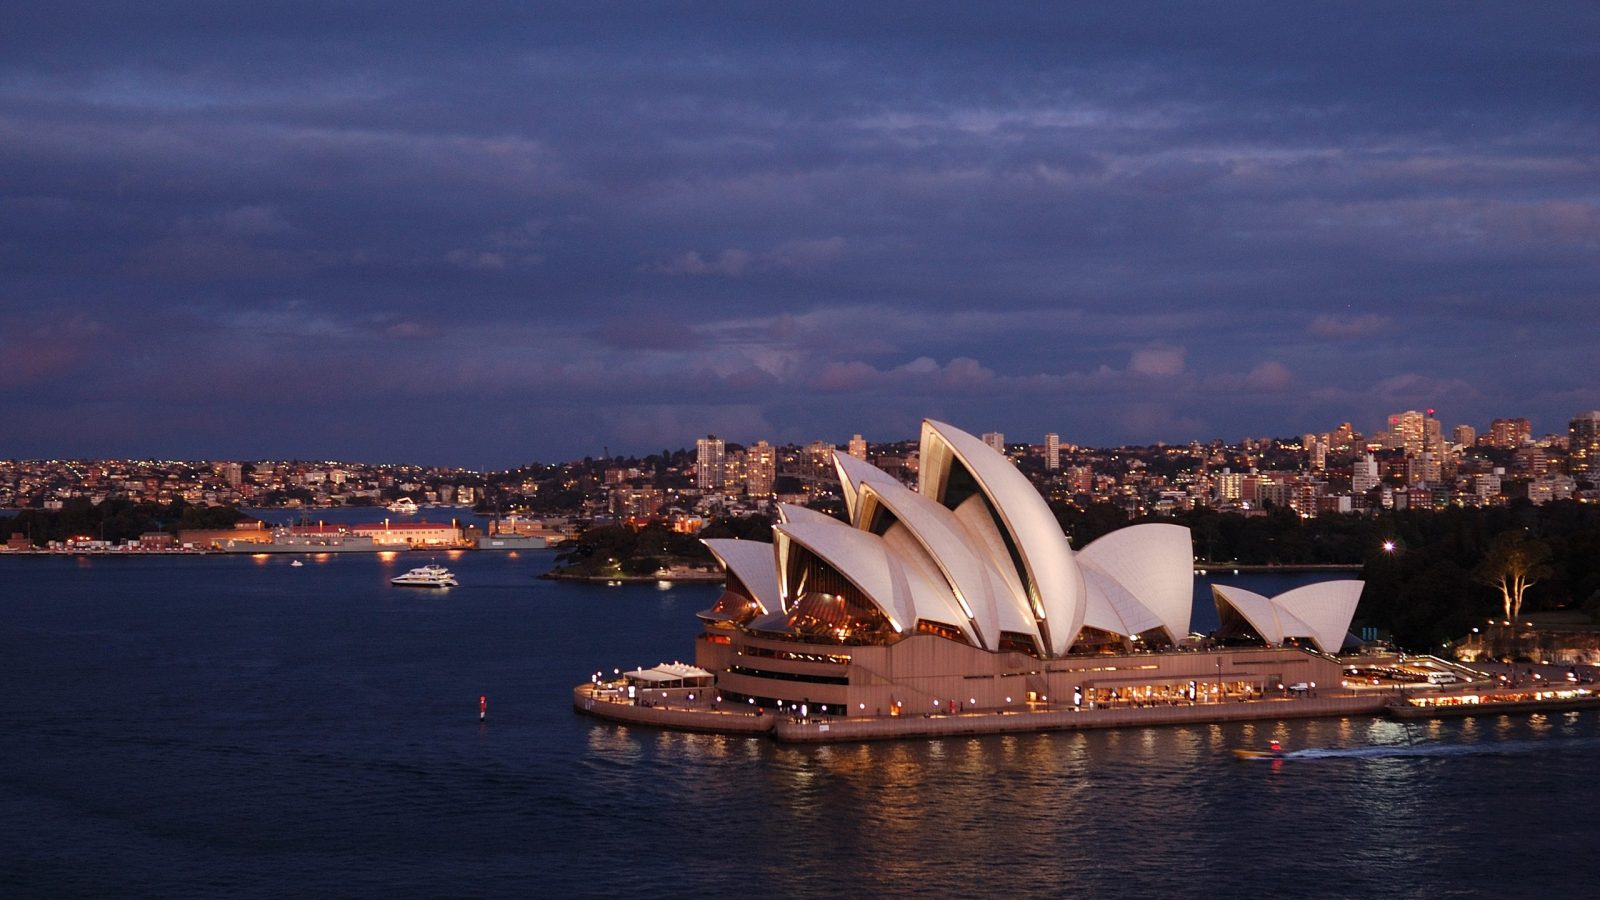 The Sydney Opera House at dusk scaled